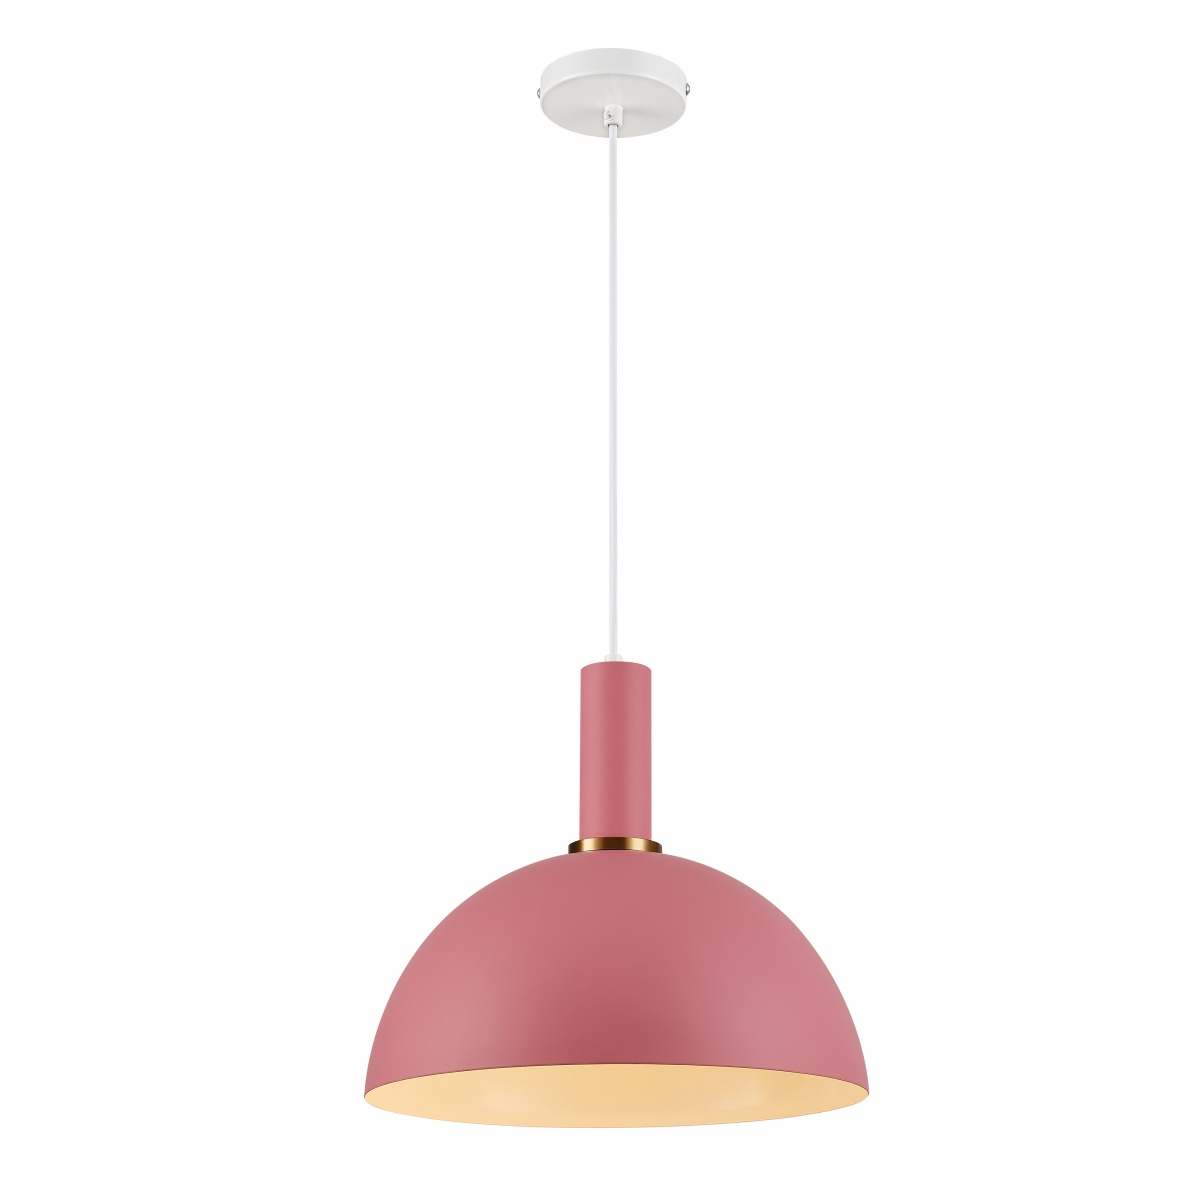 Lampa wisząca Omega, 30 cm średnica, styl skandynawski, różowa